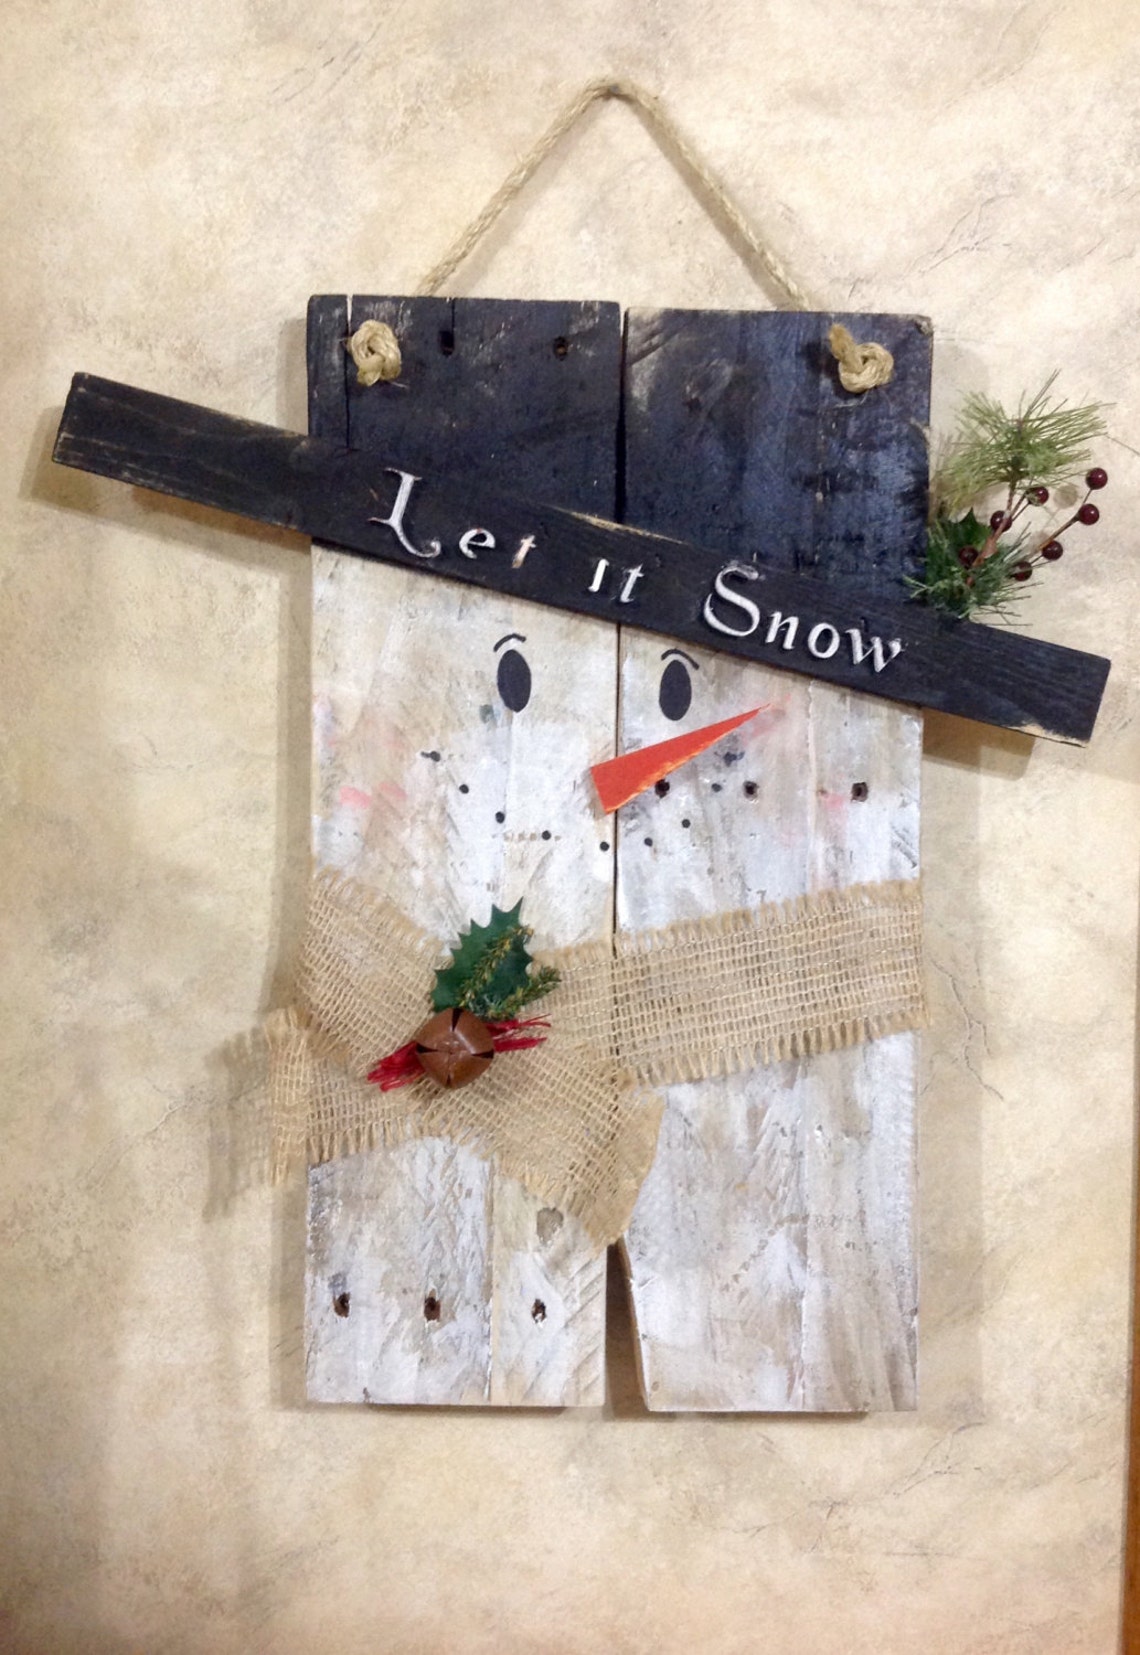 Snowman Repurposed Primitive Pallet Wood Snowman Door Hanging | Etsy